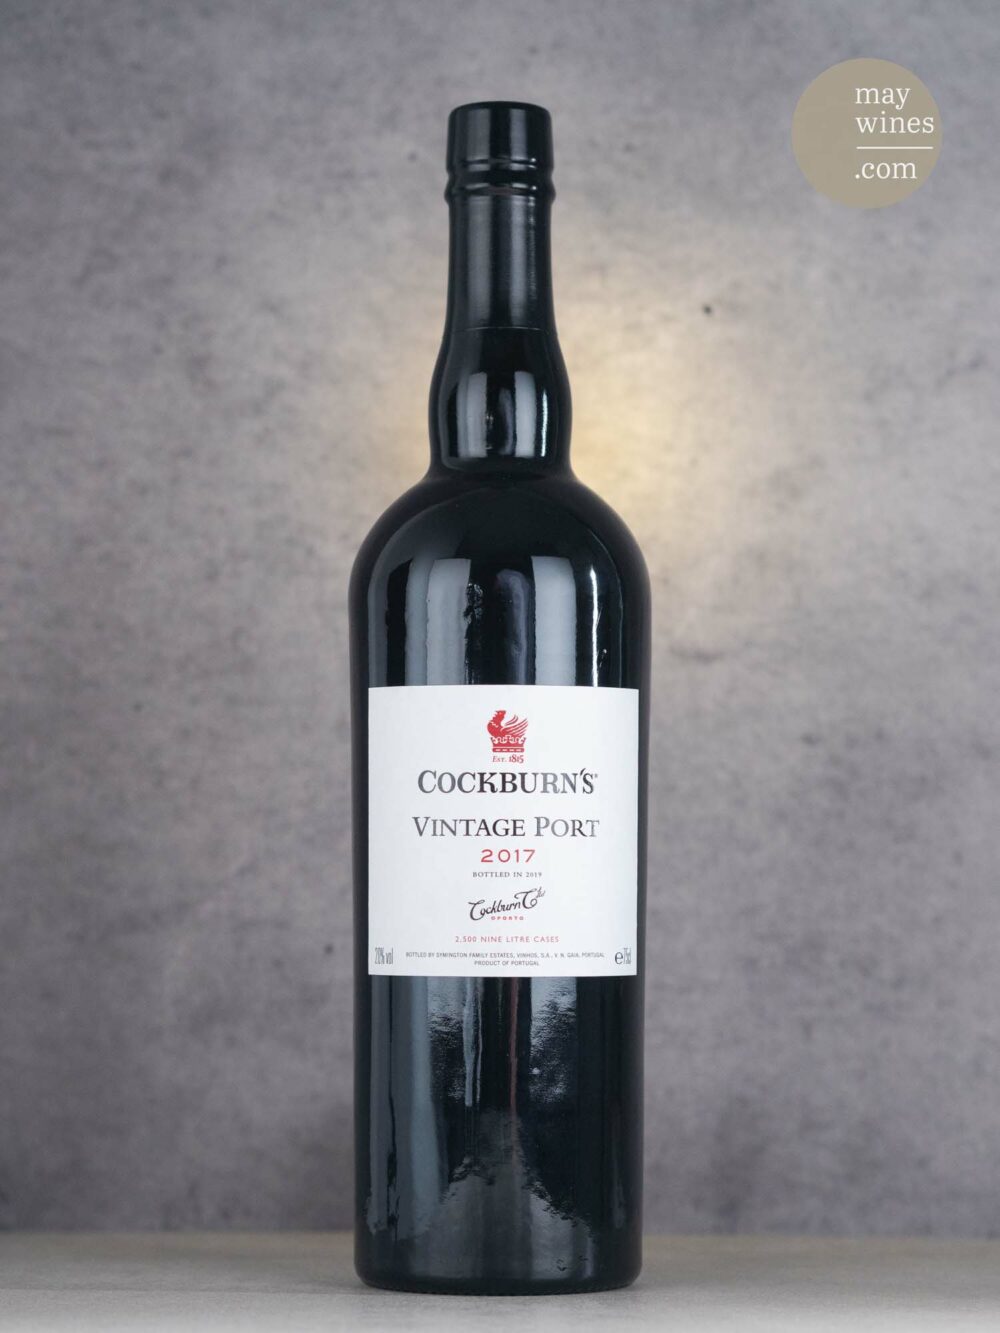 May Wines – Portwein – 2017 Vintage Port - Cockburn's